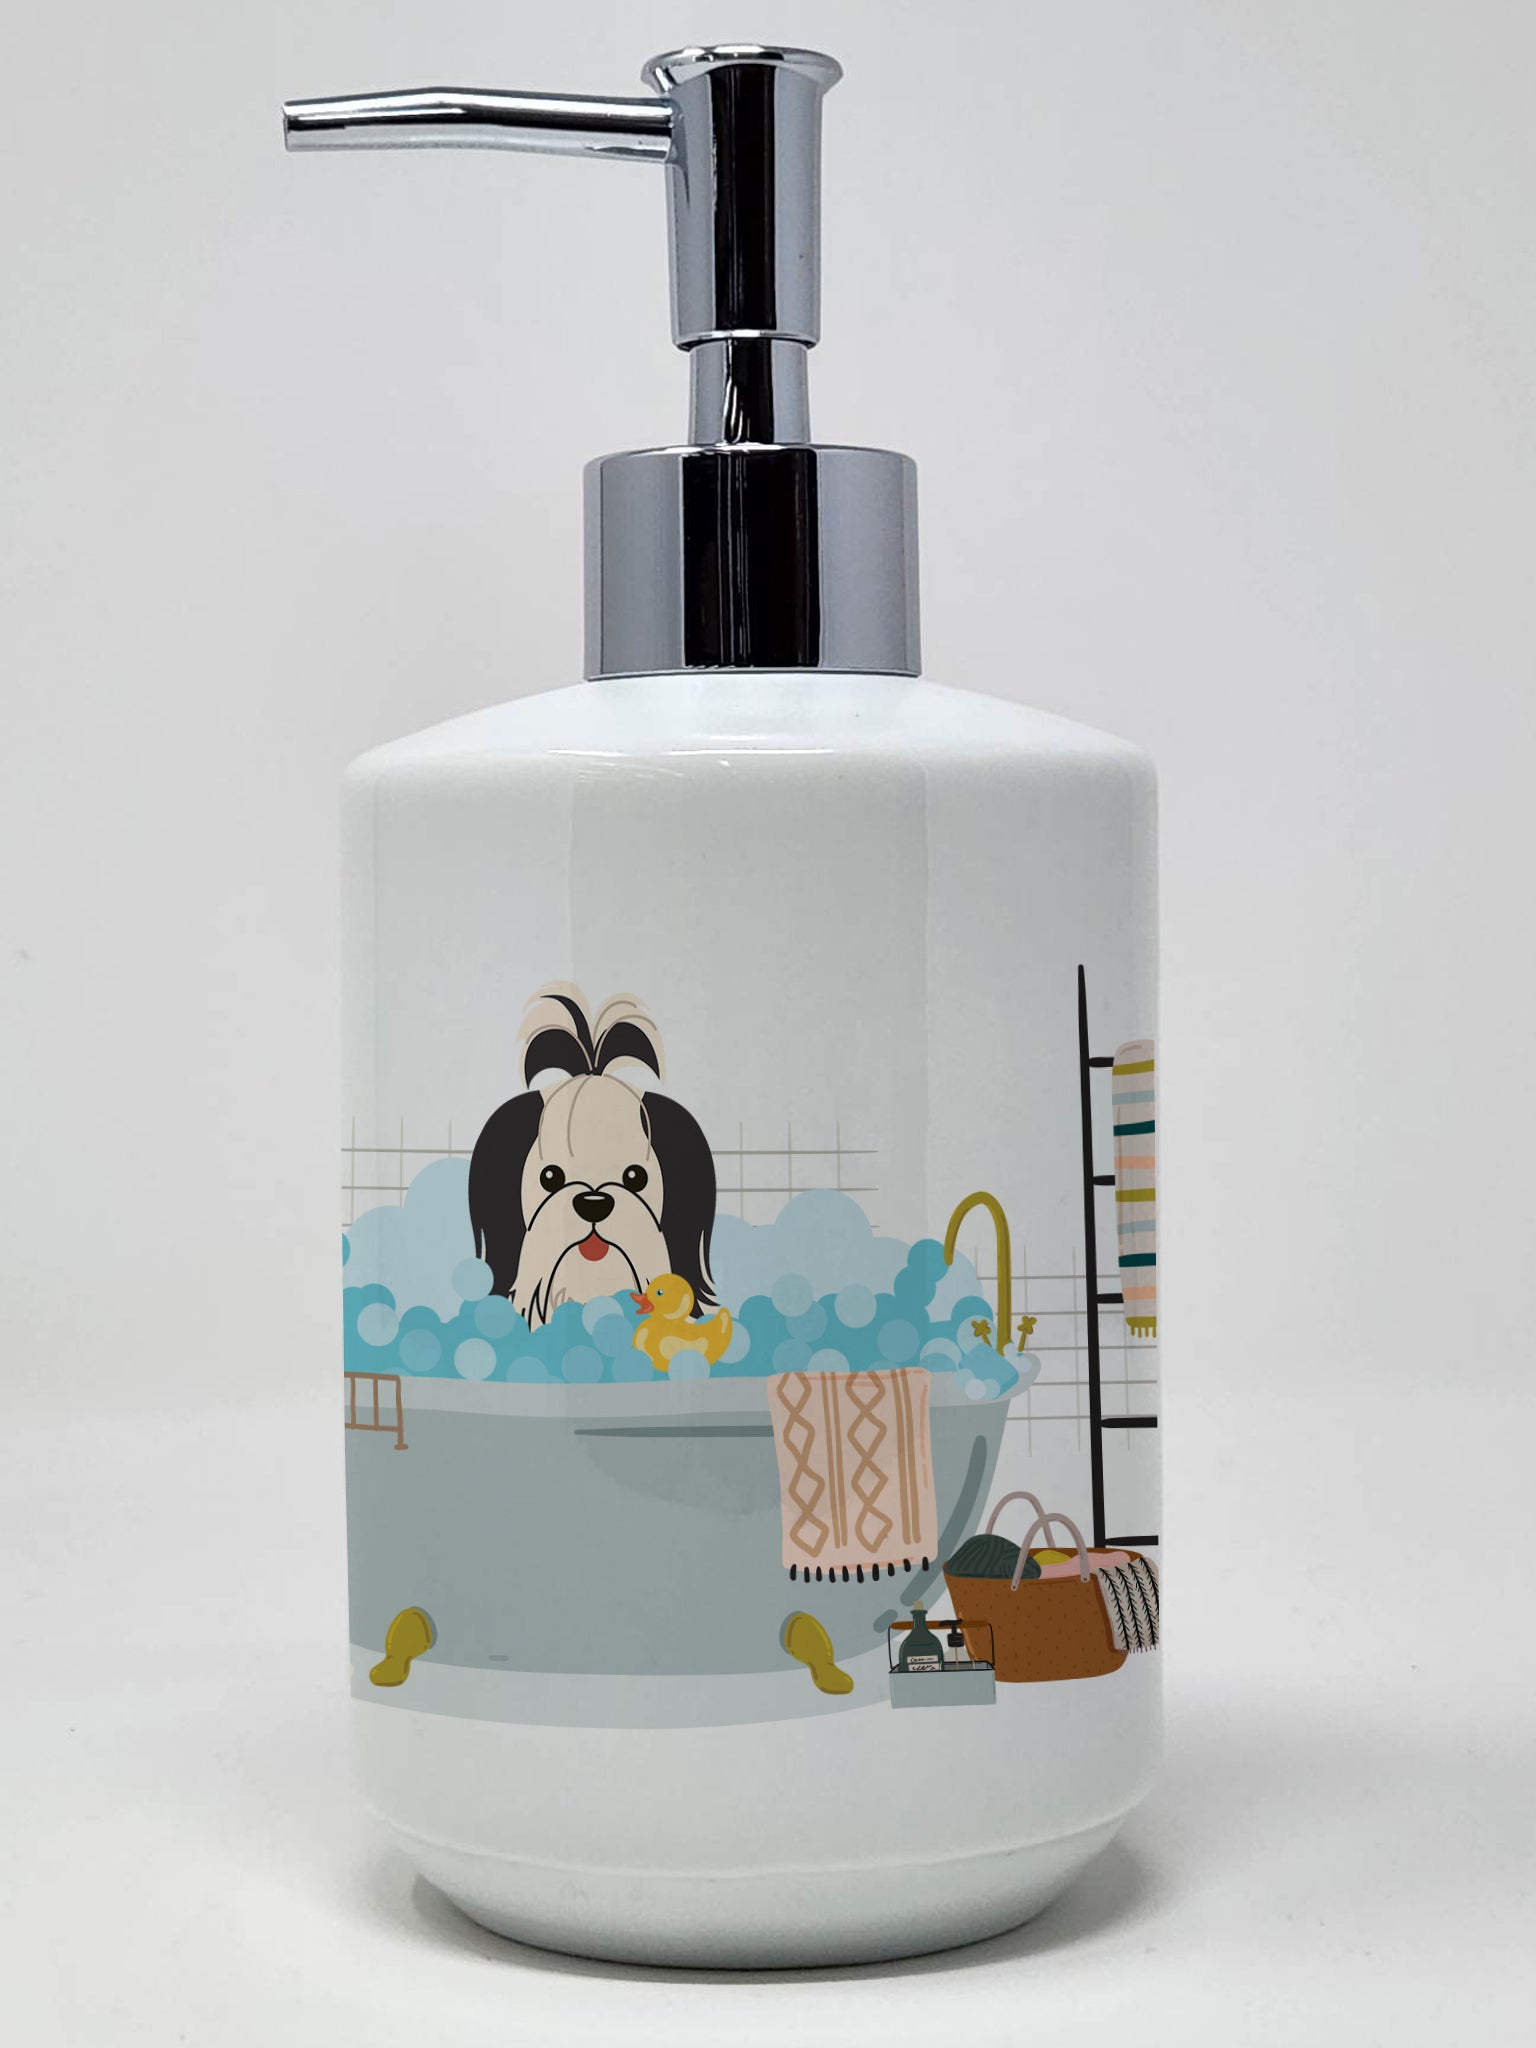 Buy this Black White Shih Tzu in Bathtub Ceramic Soap Dispenser